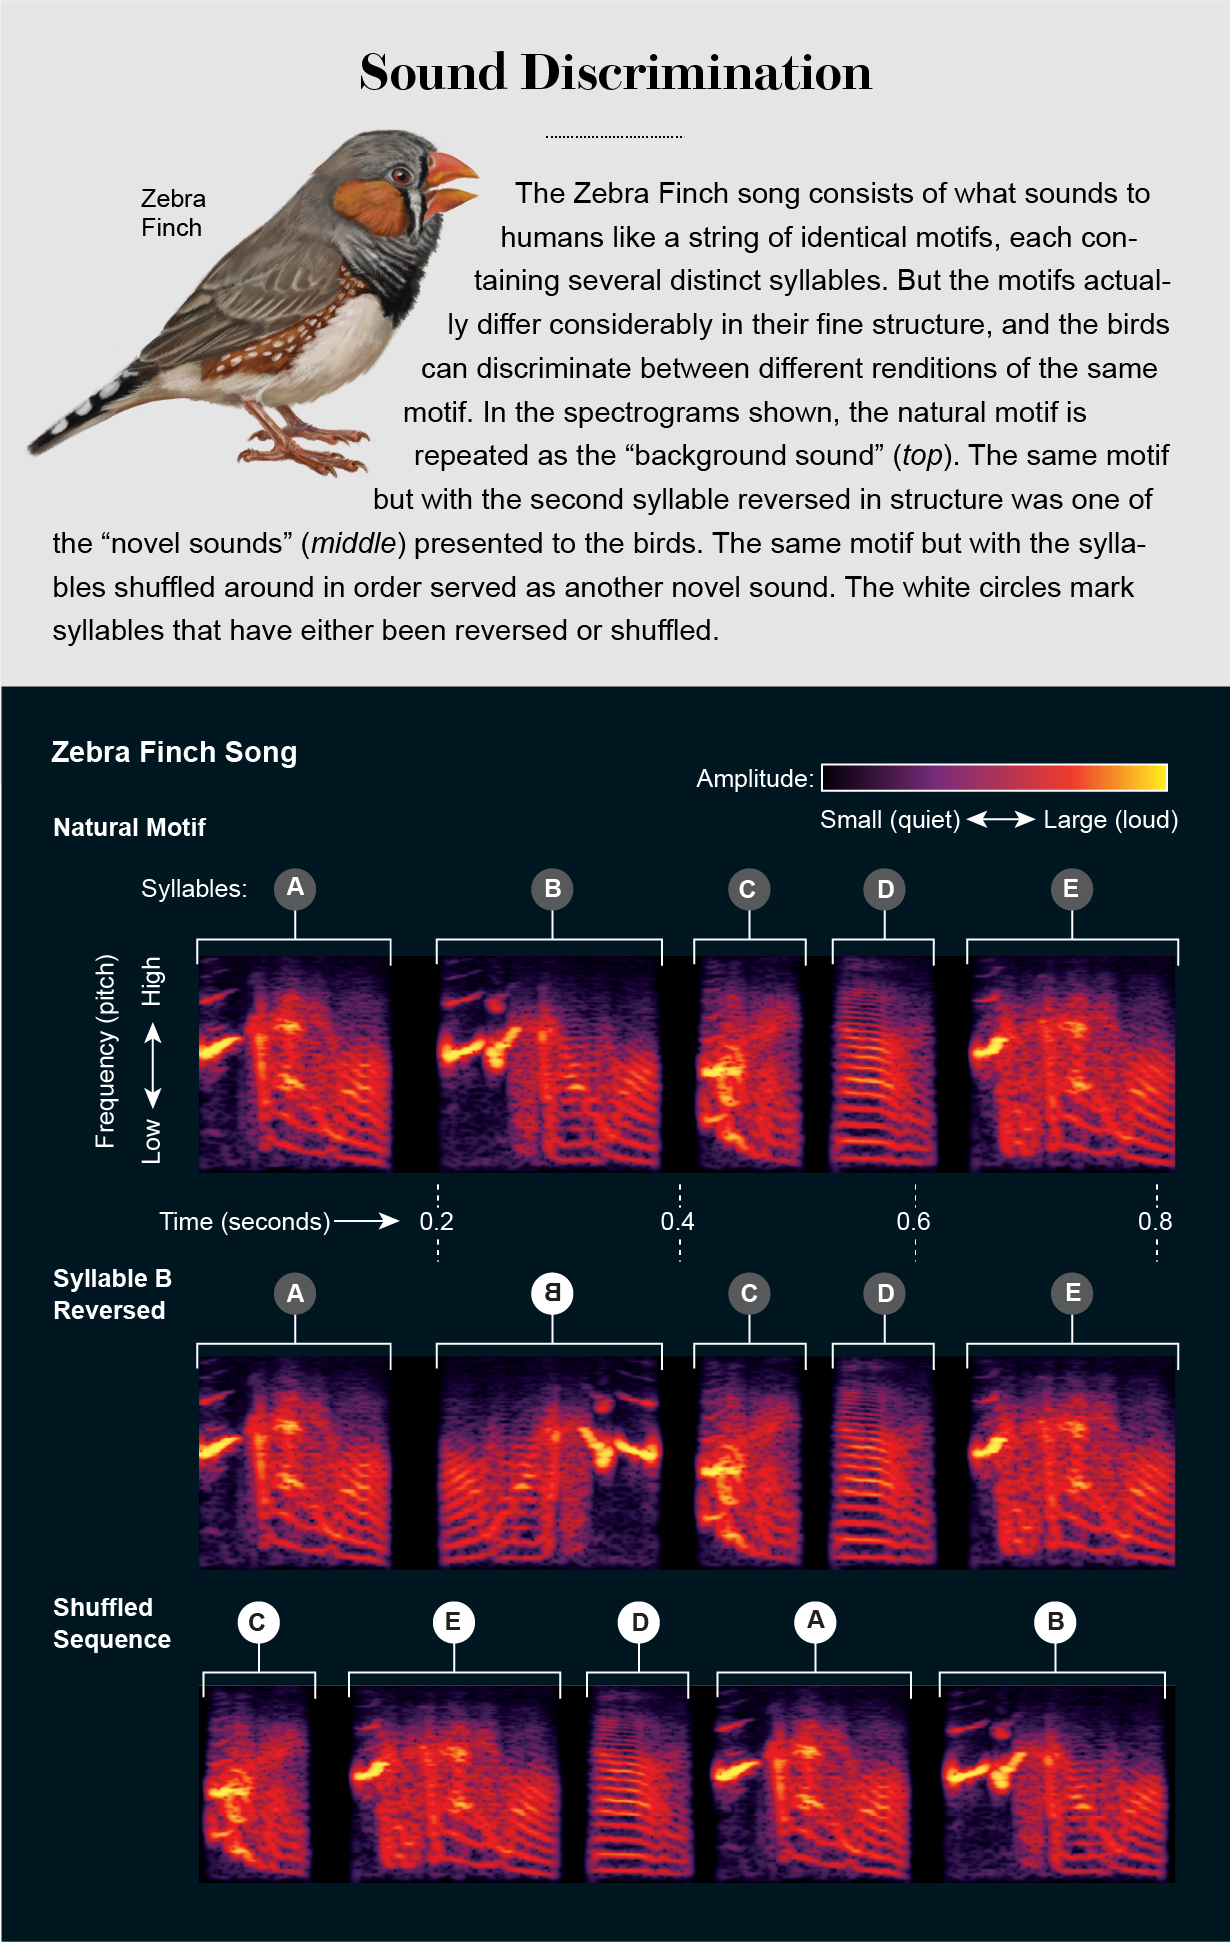 谱图显示了人类在斑胸草雀的歌声中感知到的主题，以及在实验中音节是如何被颠倒和打乱的。